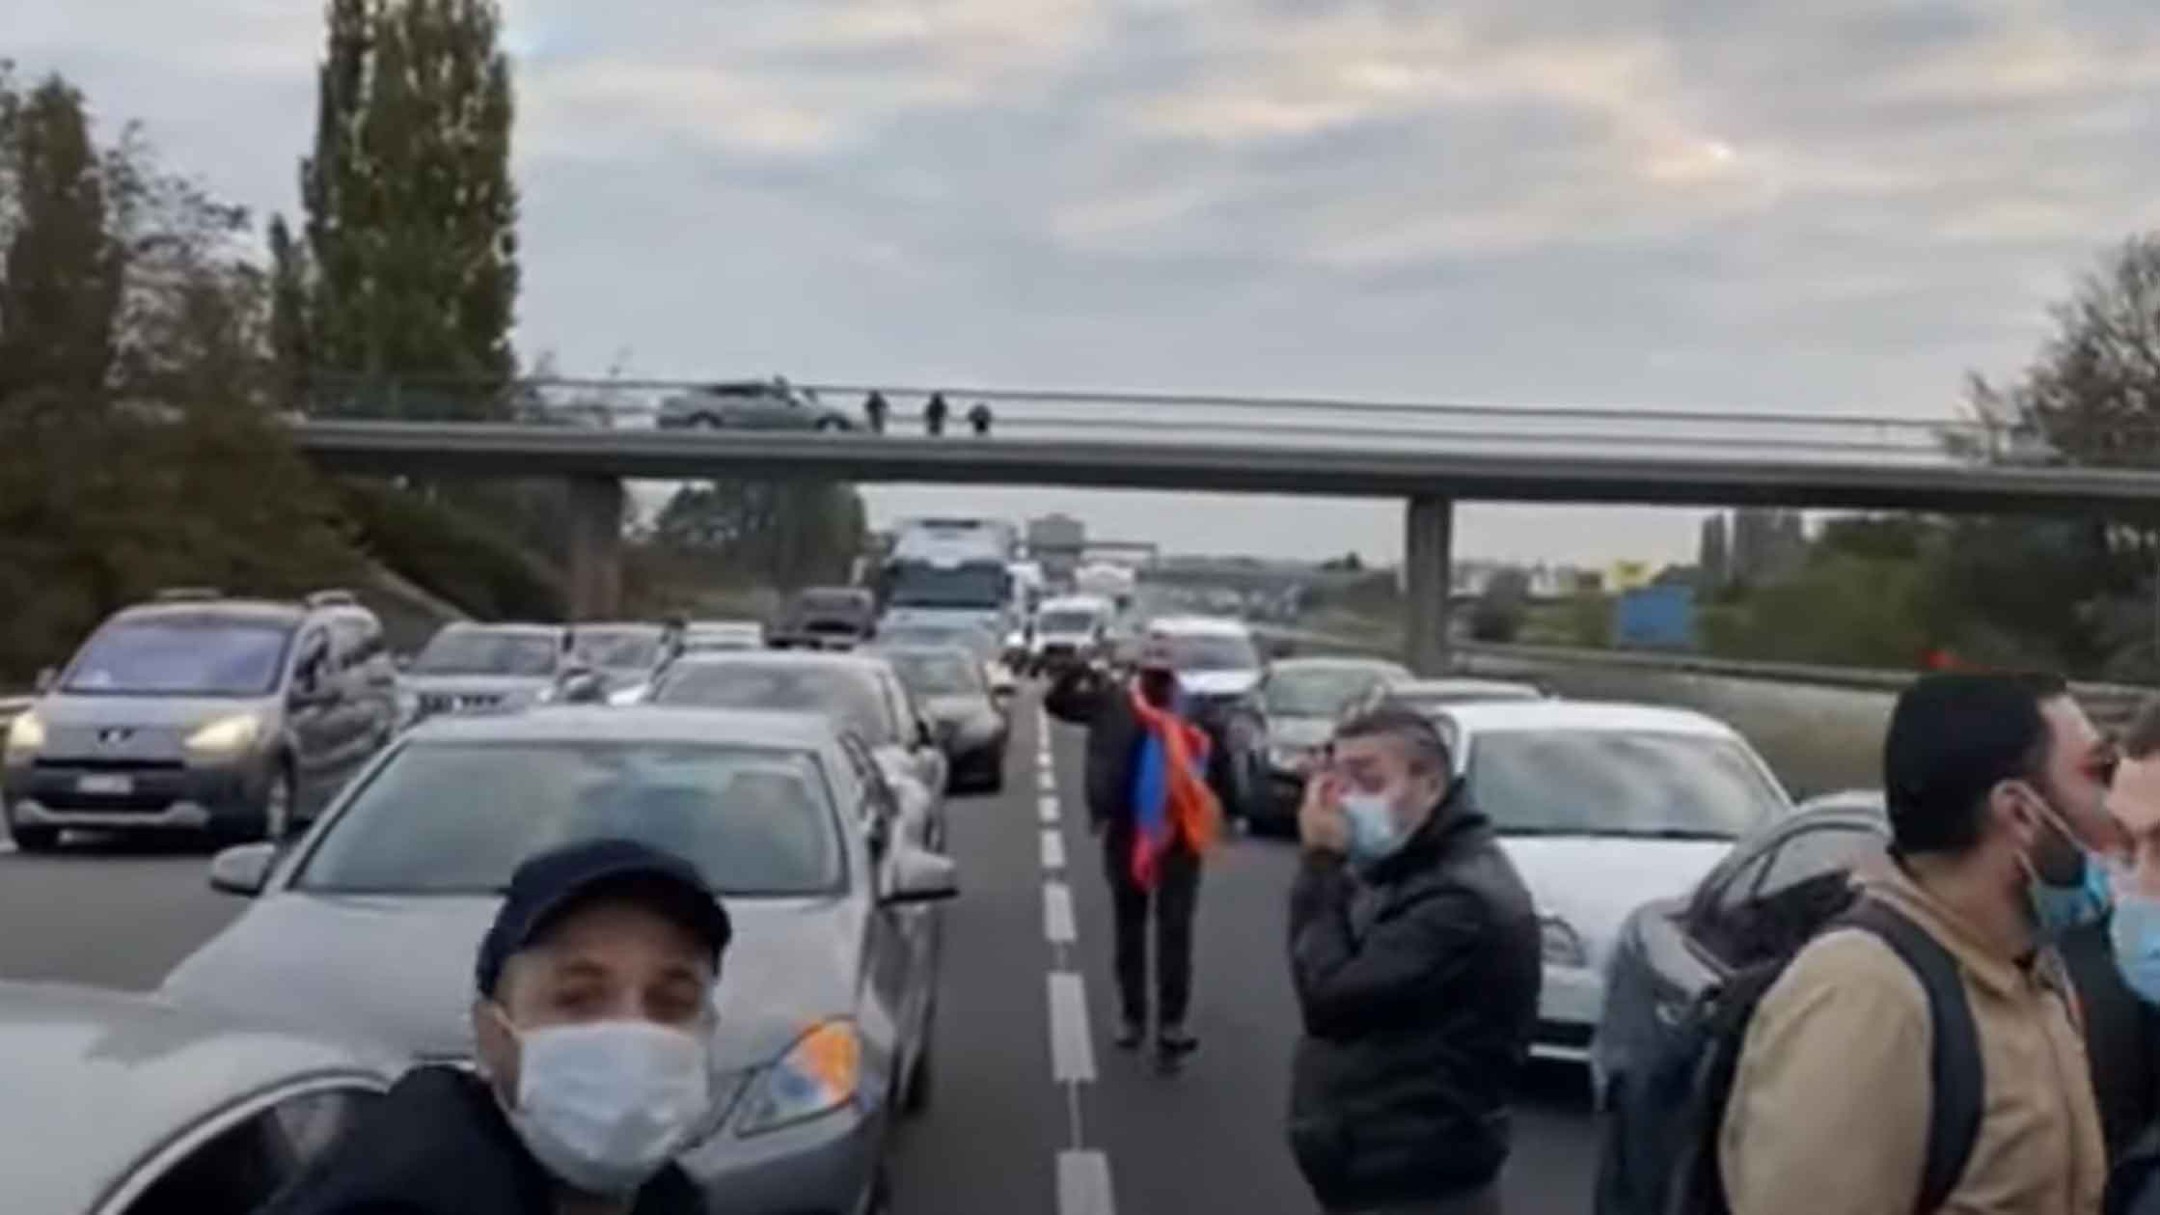 Dailystorm - Армяне перекрыли дороги во Франции в знак протеста из-за войны в Карабахе